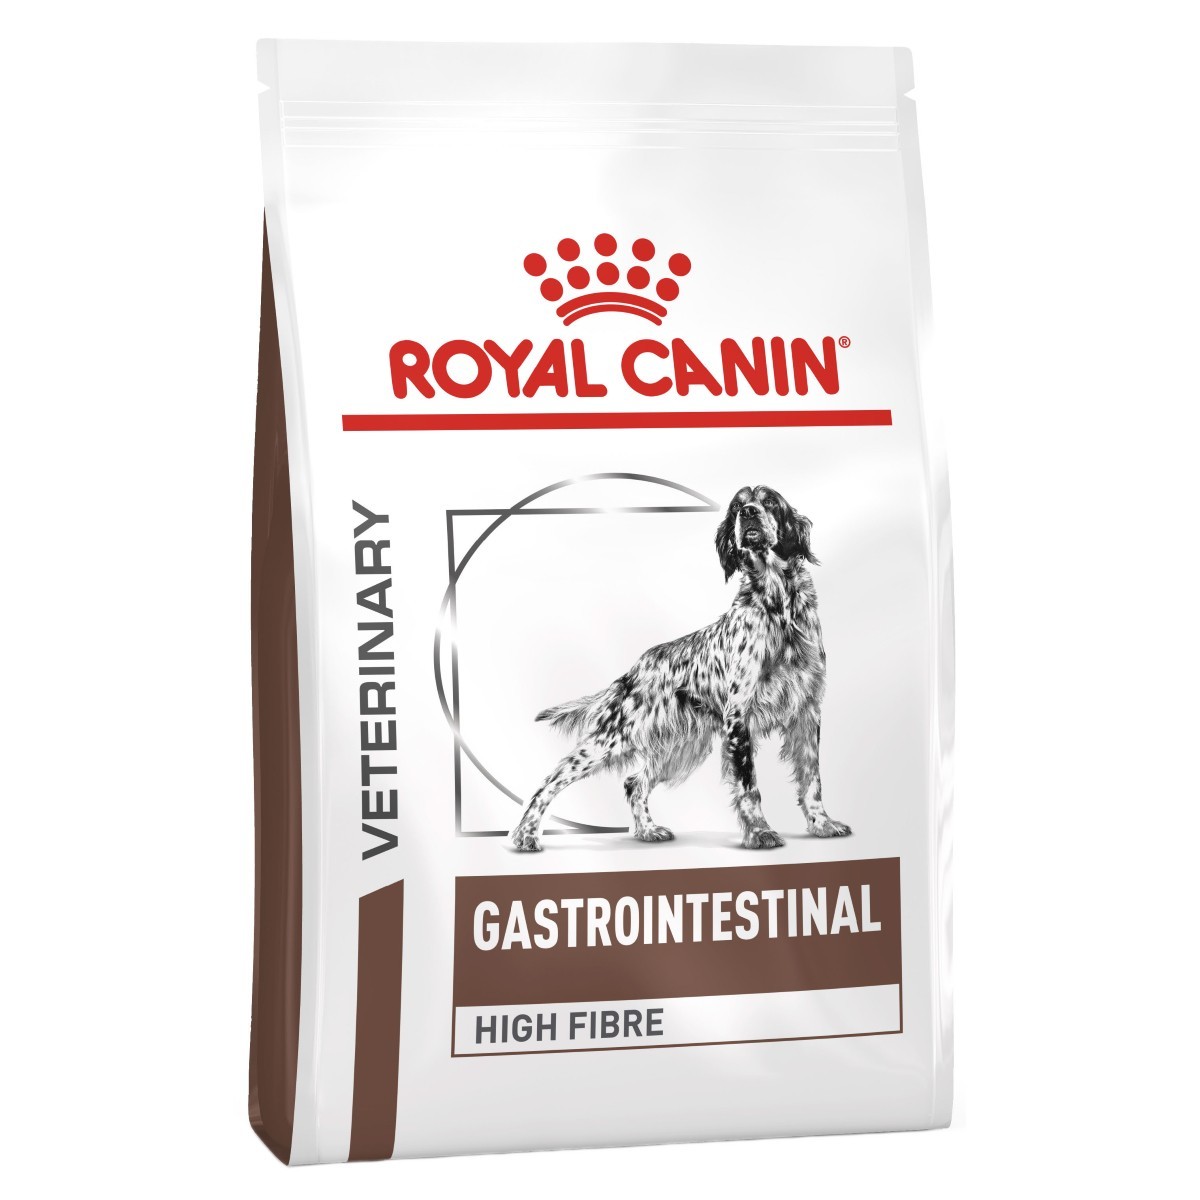 royal canin high fiber